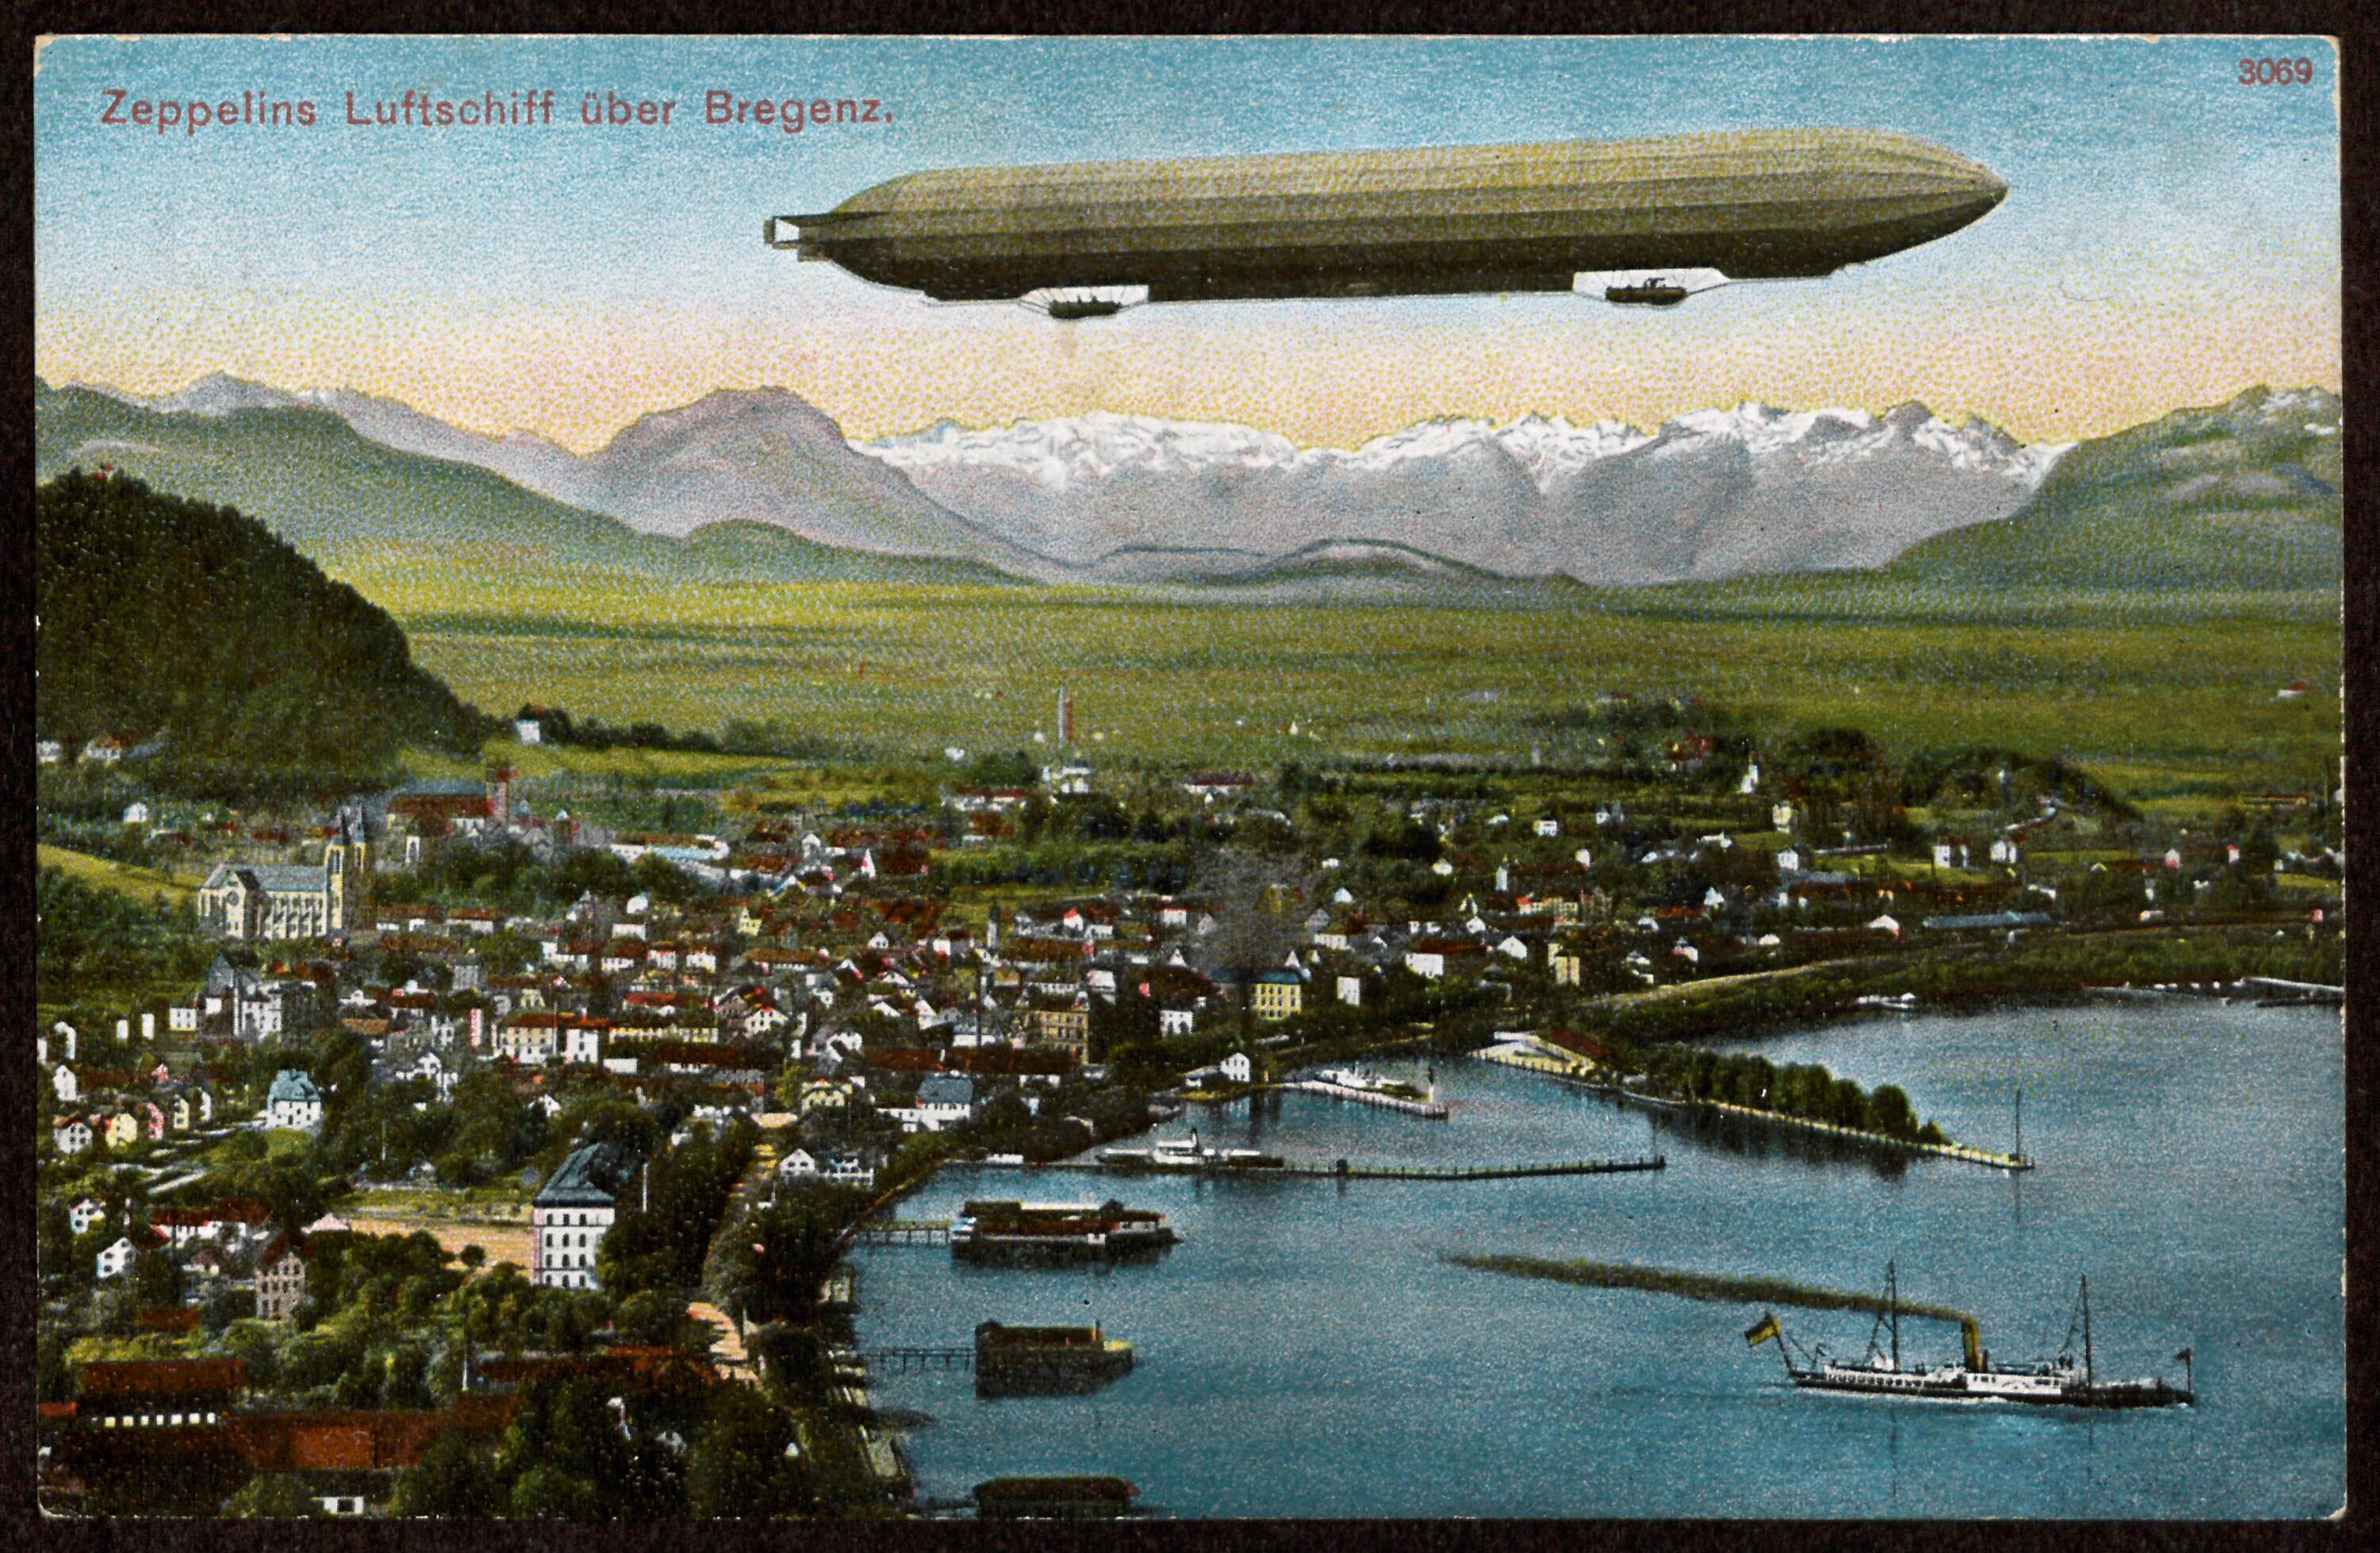 Zeppelins Luftschiff über Bregenz></div>


    <hr>
    <div class=